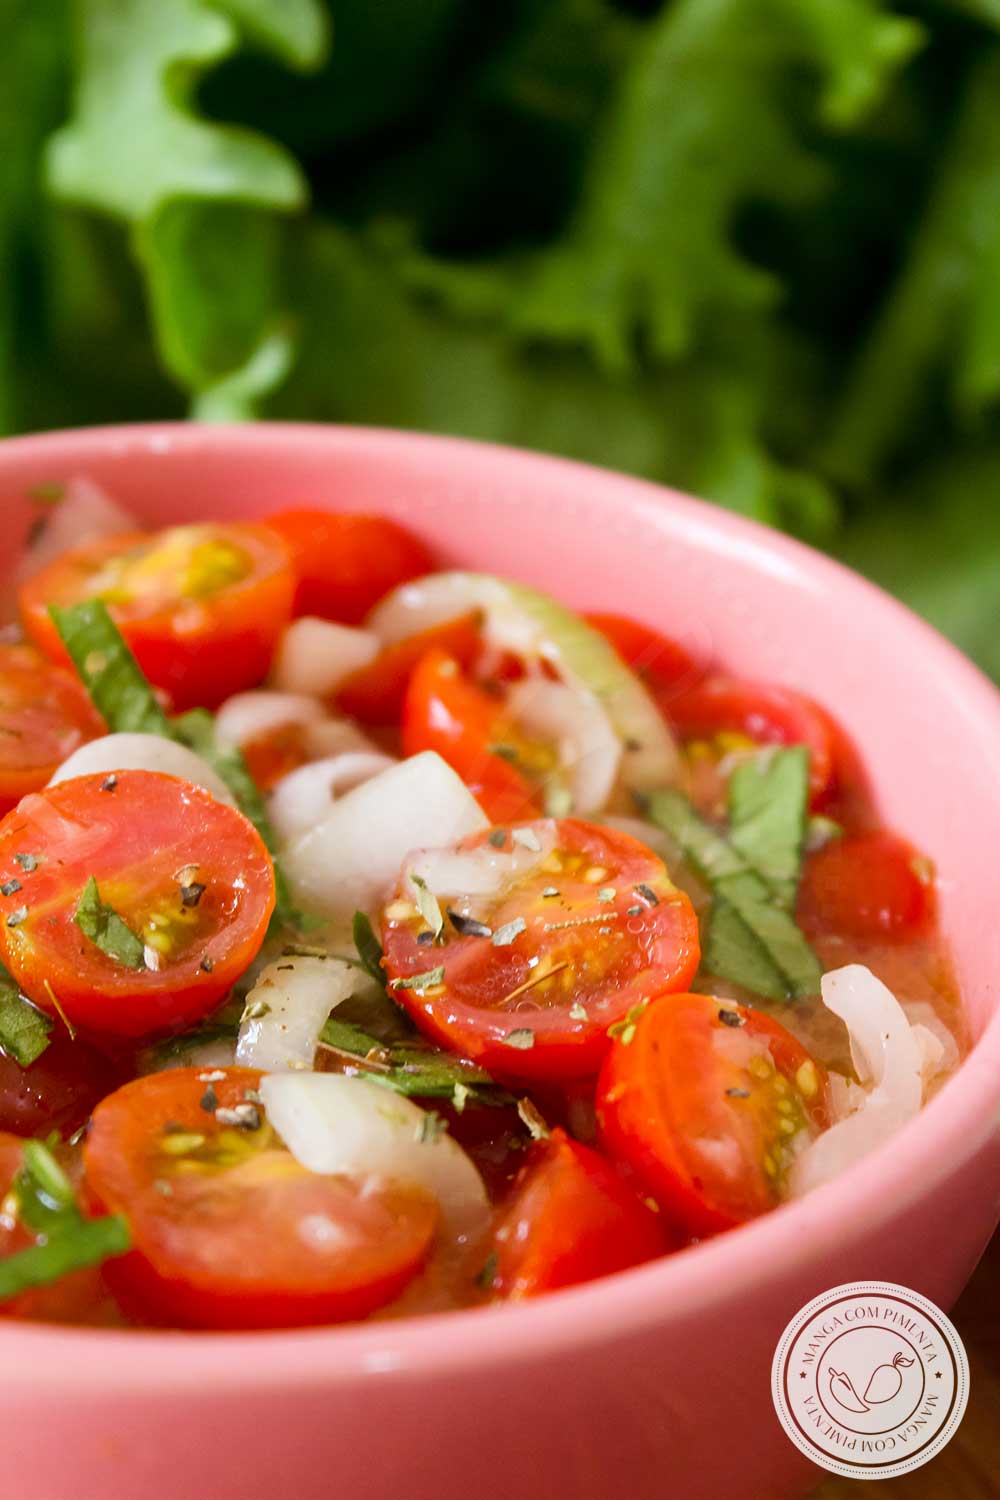 Receita de Tomates Cereja Marinados - prepare nos dias quentes de verão!